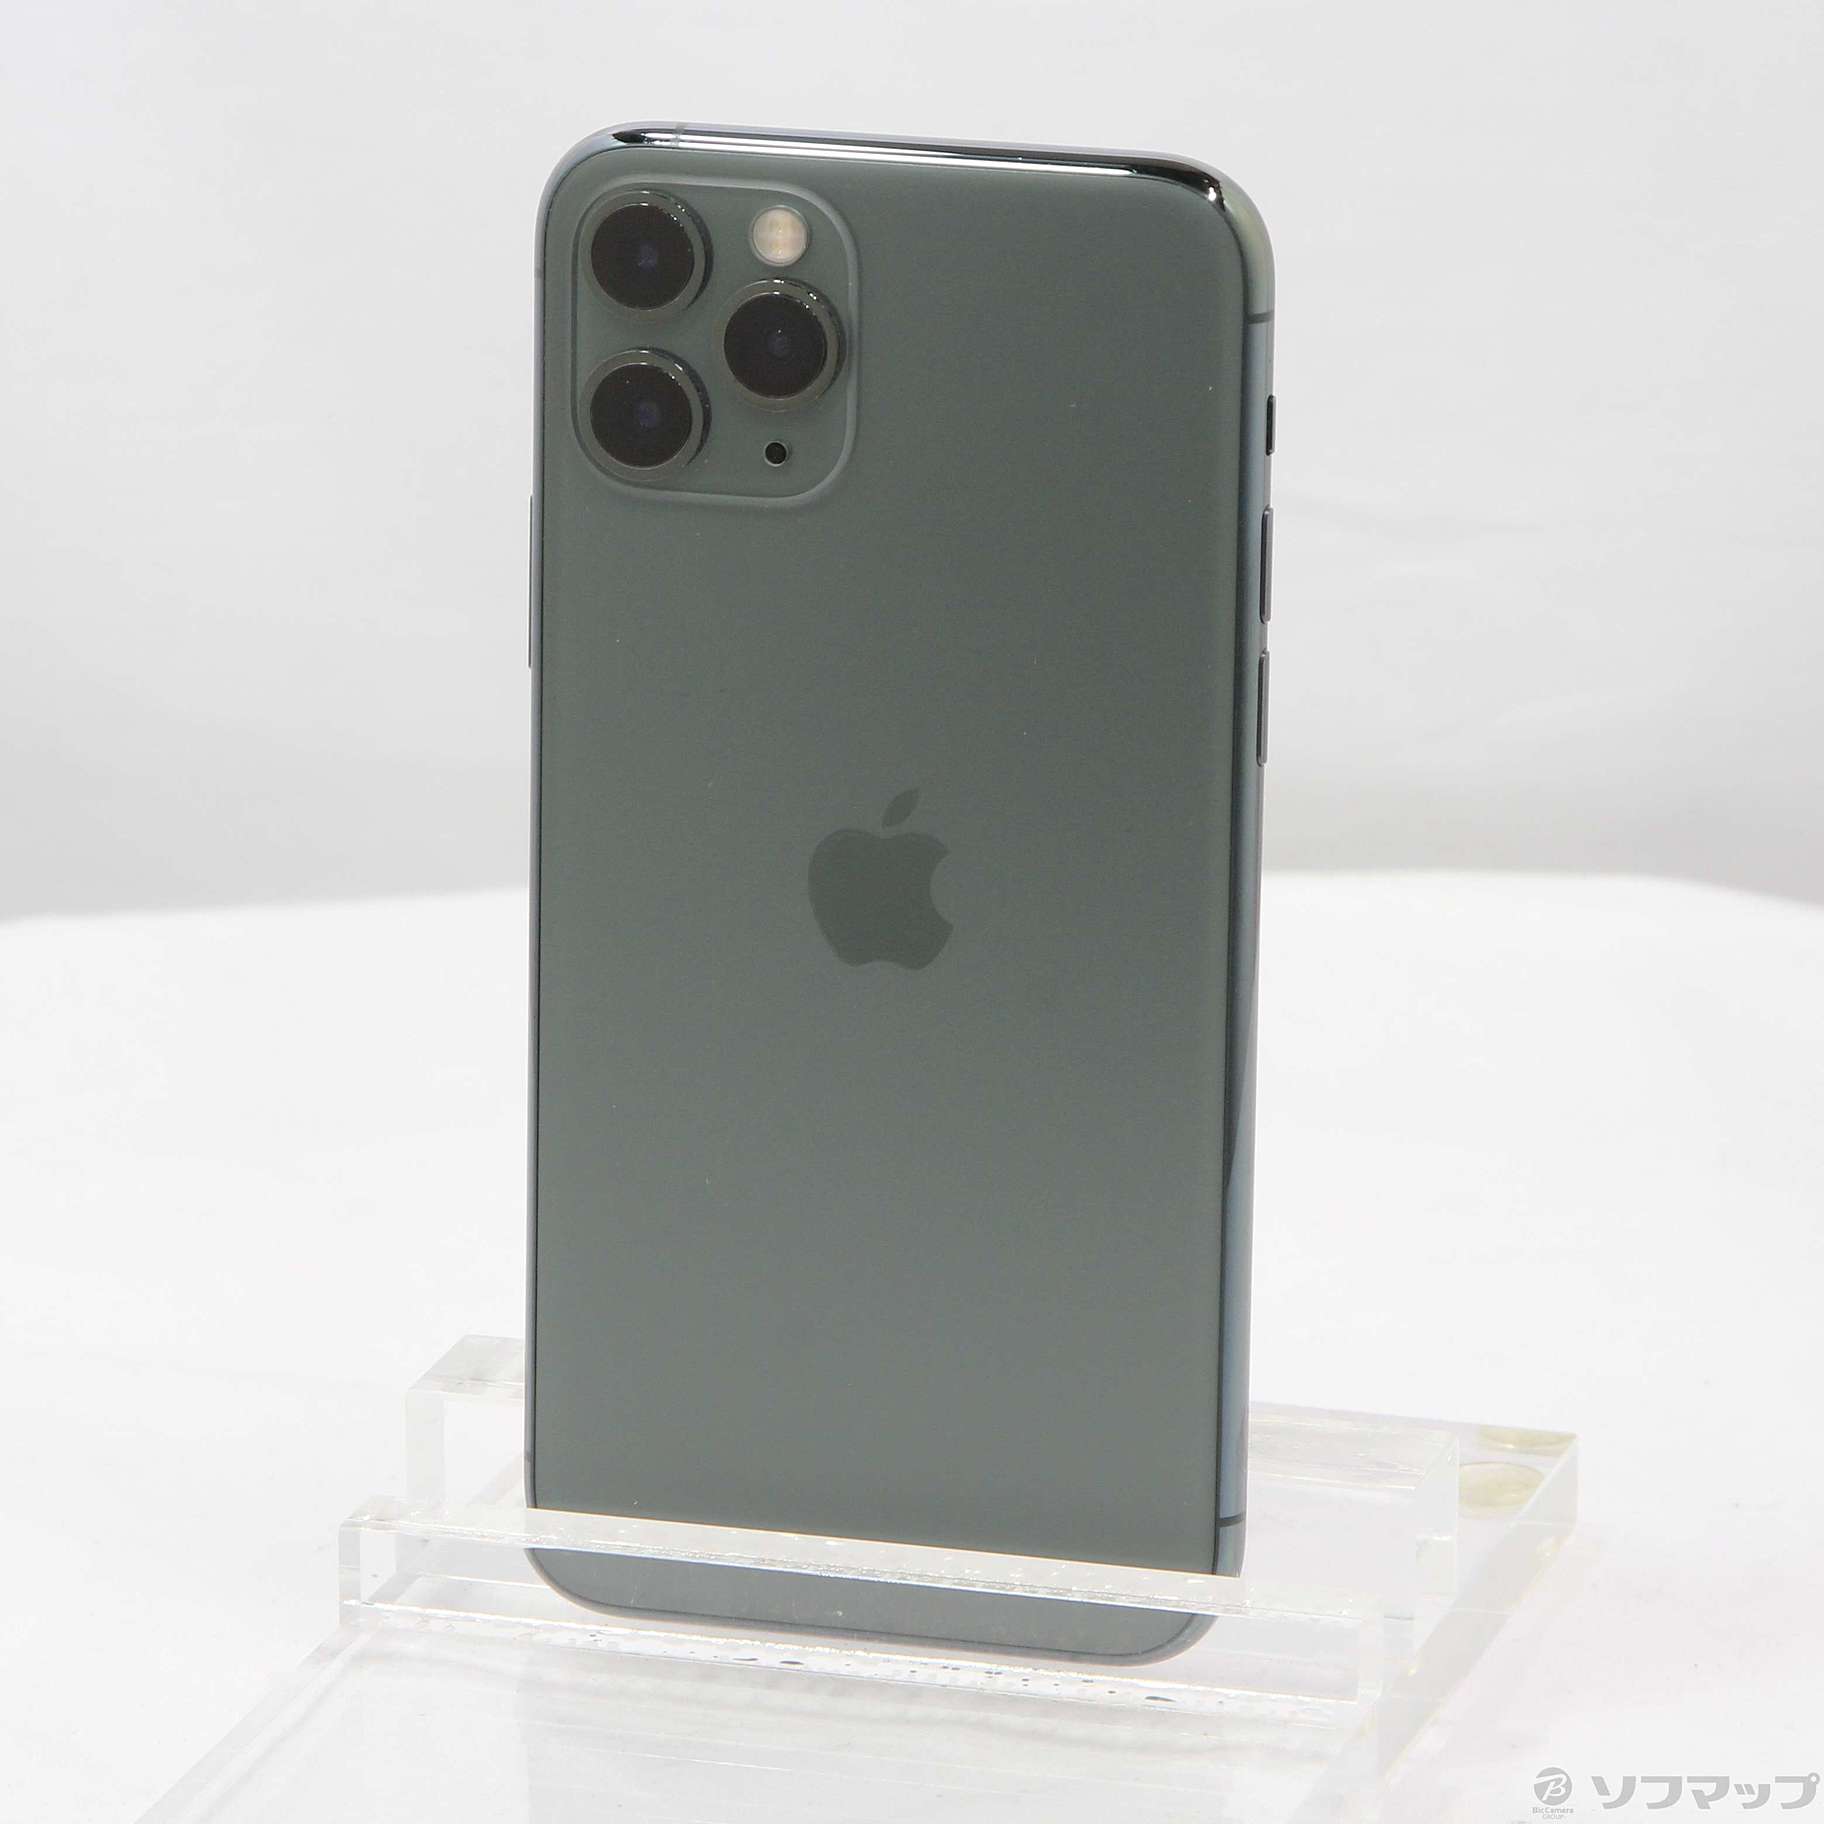 【好評大人気】SoftBank MWCC2J/A iPhone 11 Pro 256GB ミッドナイトグリーン SB iPhone